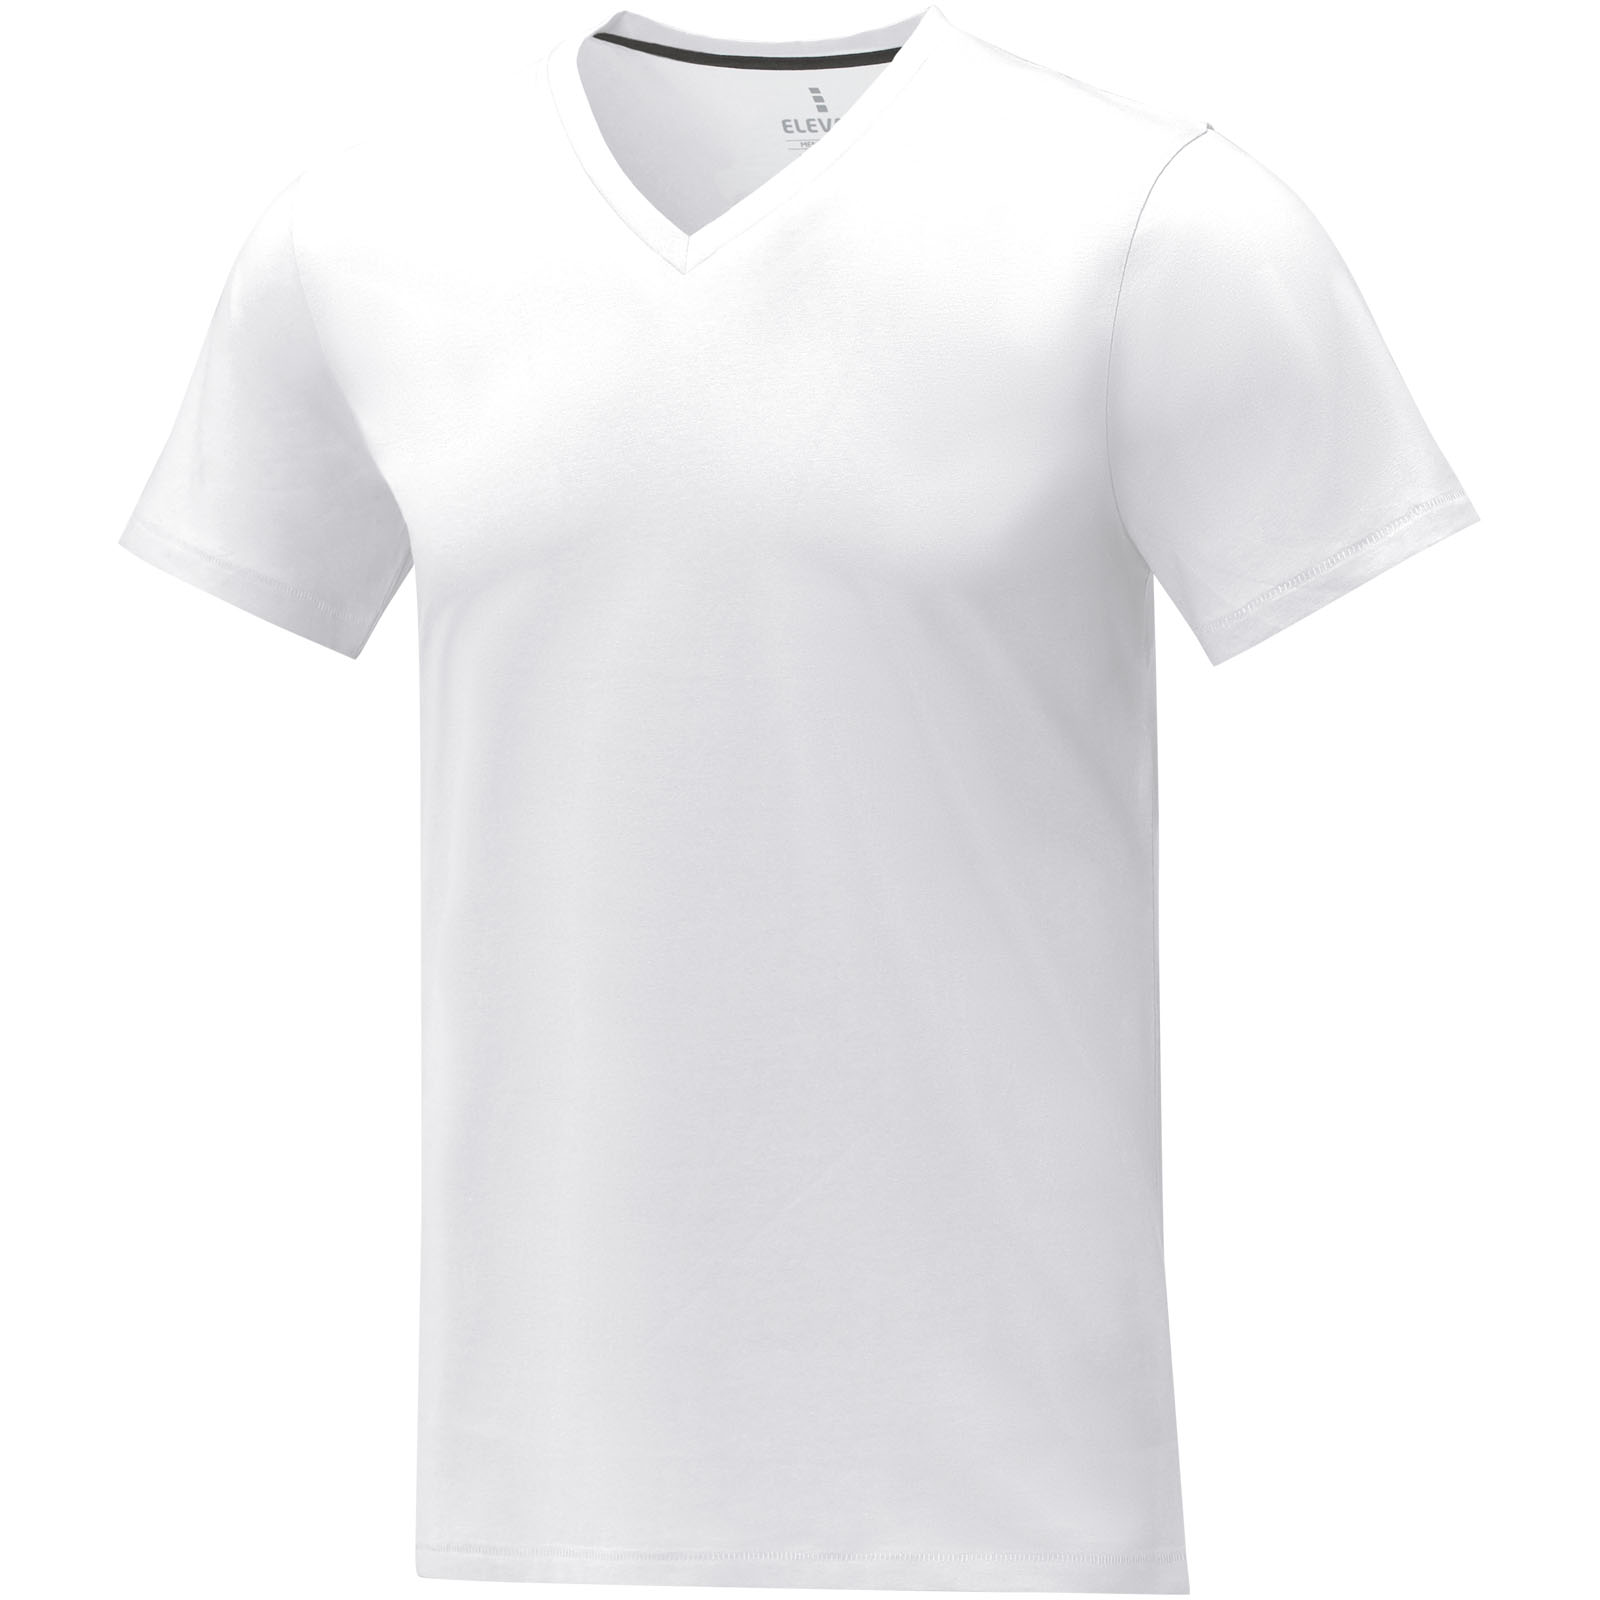 Vêtements - T-shirt Somoto manches courtes col V homme 